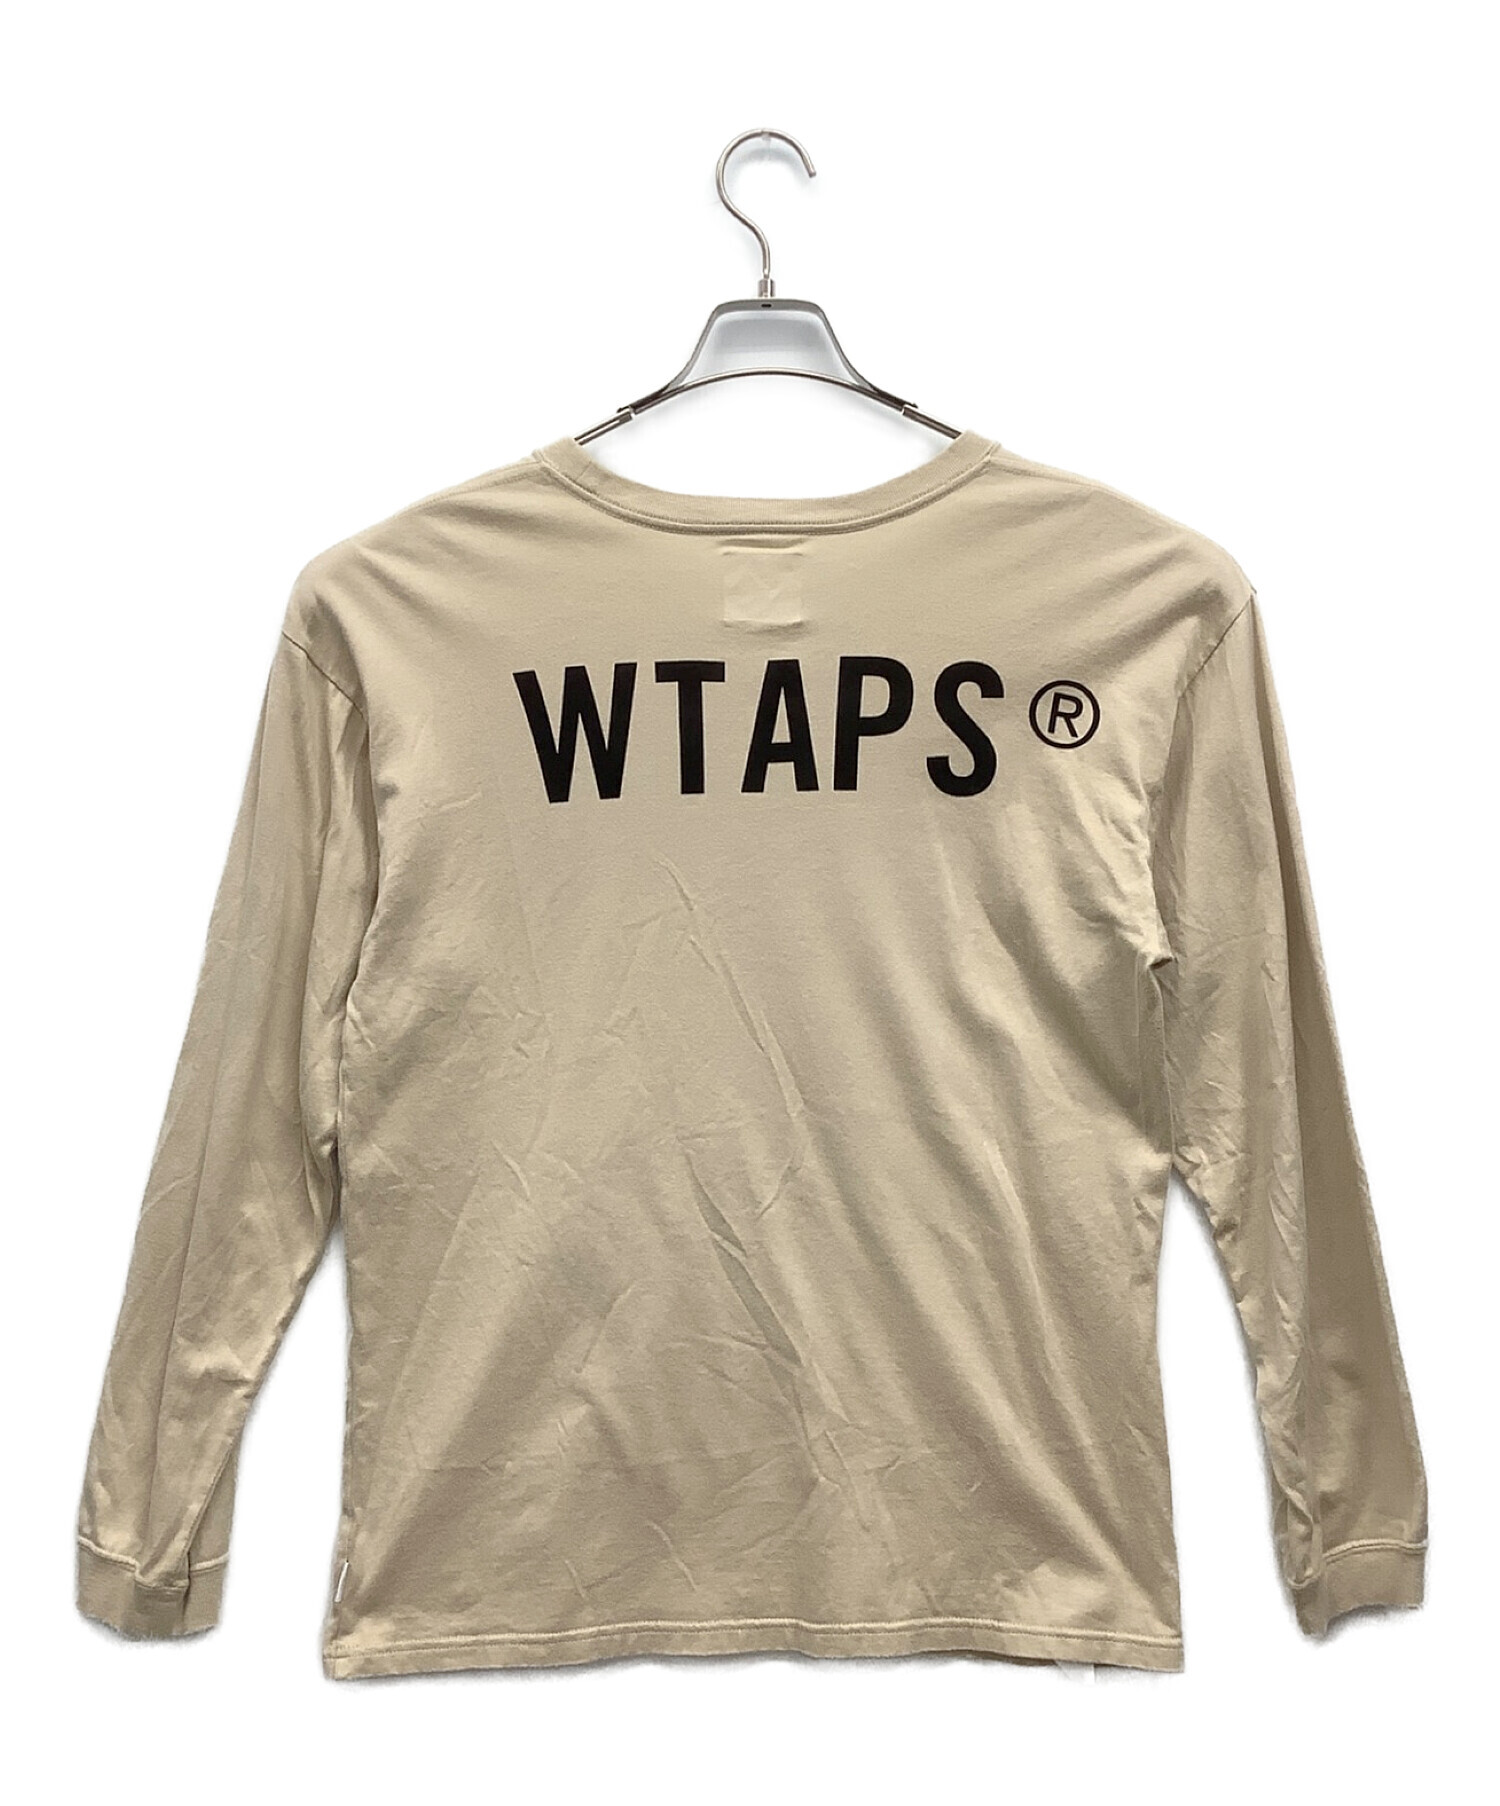 WTAPS (ダブルタップス) 長袖Tシャツ ベージュ サイズ:X 02